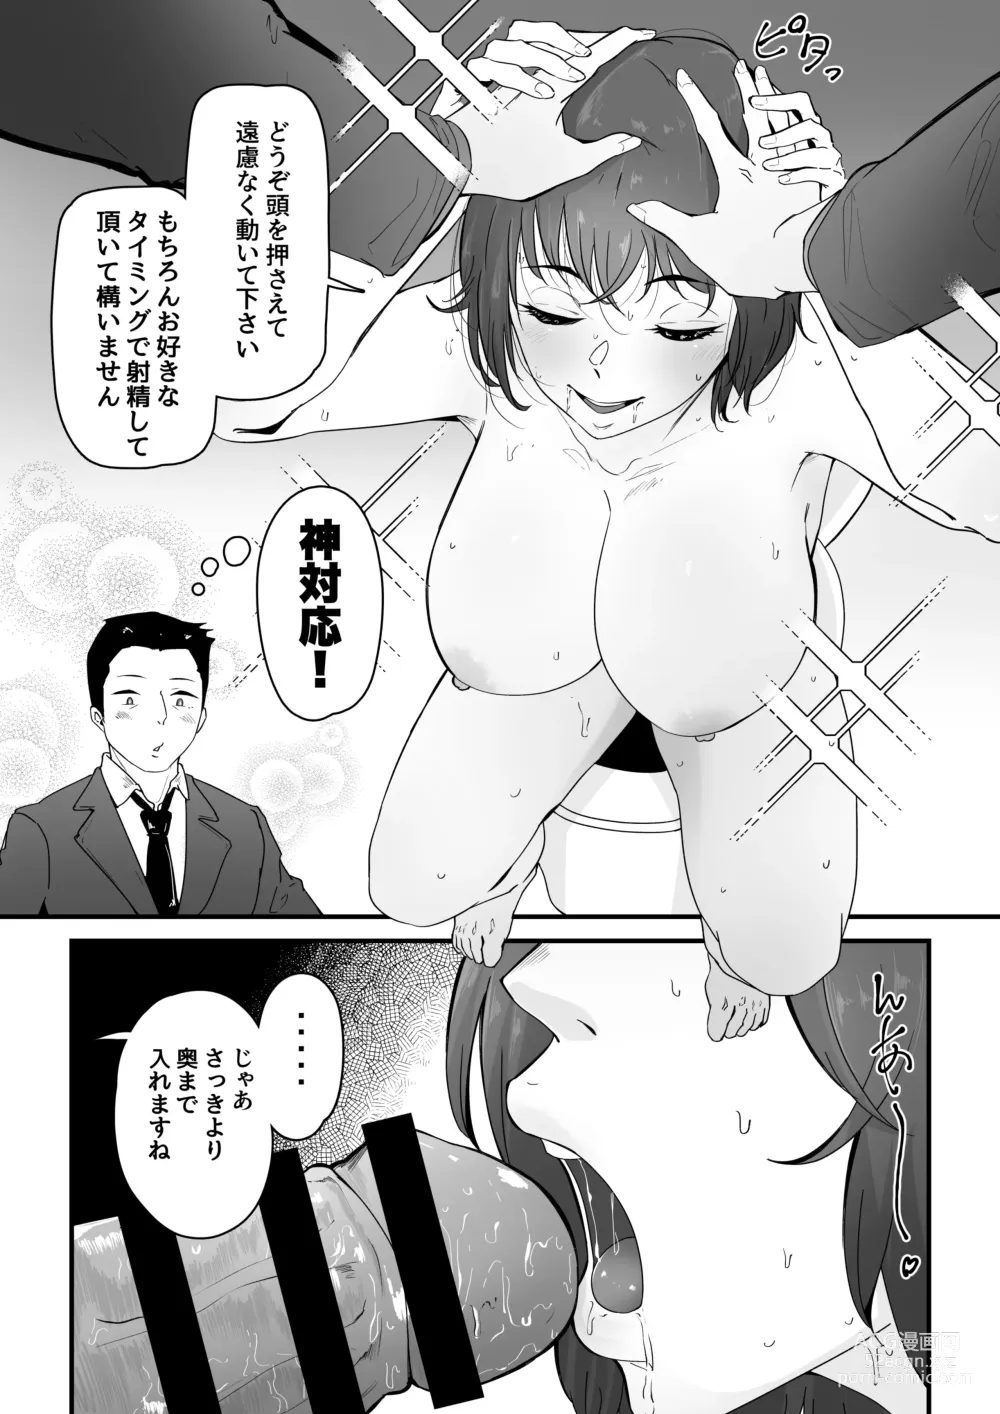 Page 39 of doujinshi Danseiyou Toile wa Itsumo Kondeiru.